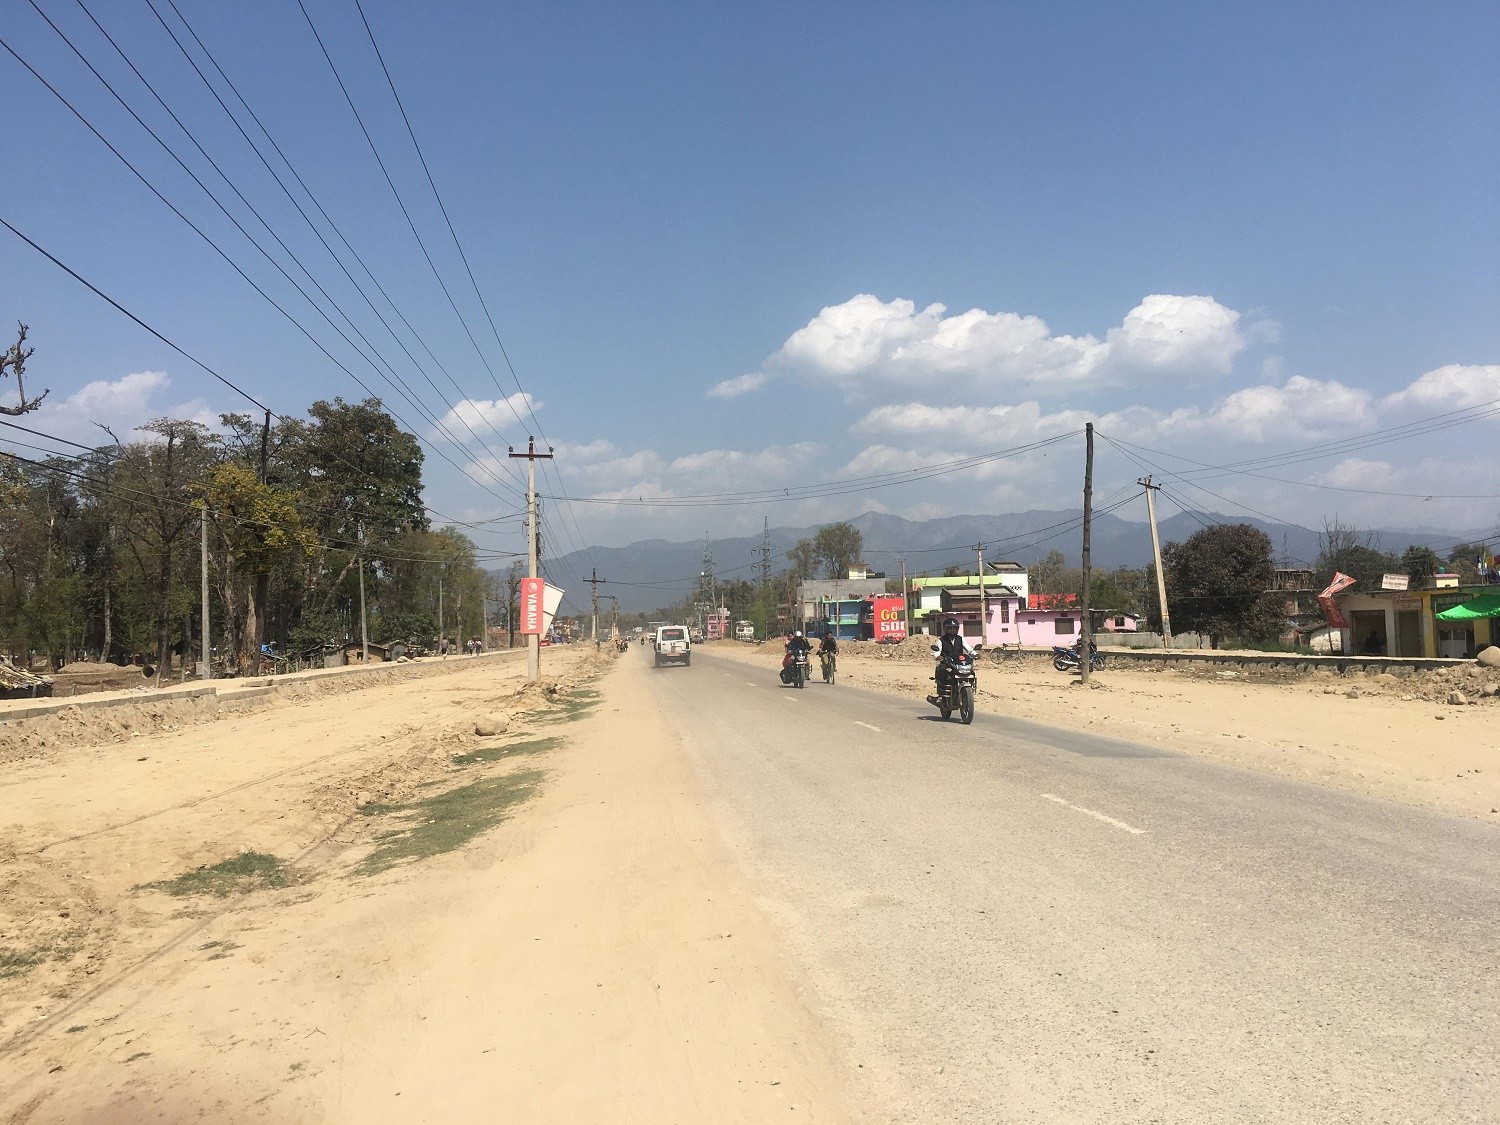 सुदूरपश्चिममा बिप्लव माओवादीको आन्दोलन जारी , आज सरकारी सवारी सञ्चालनमा रोक